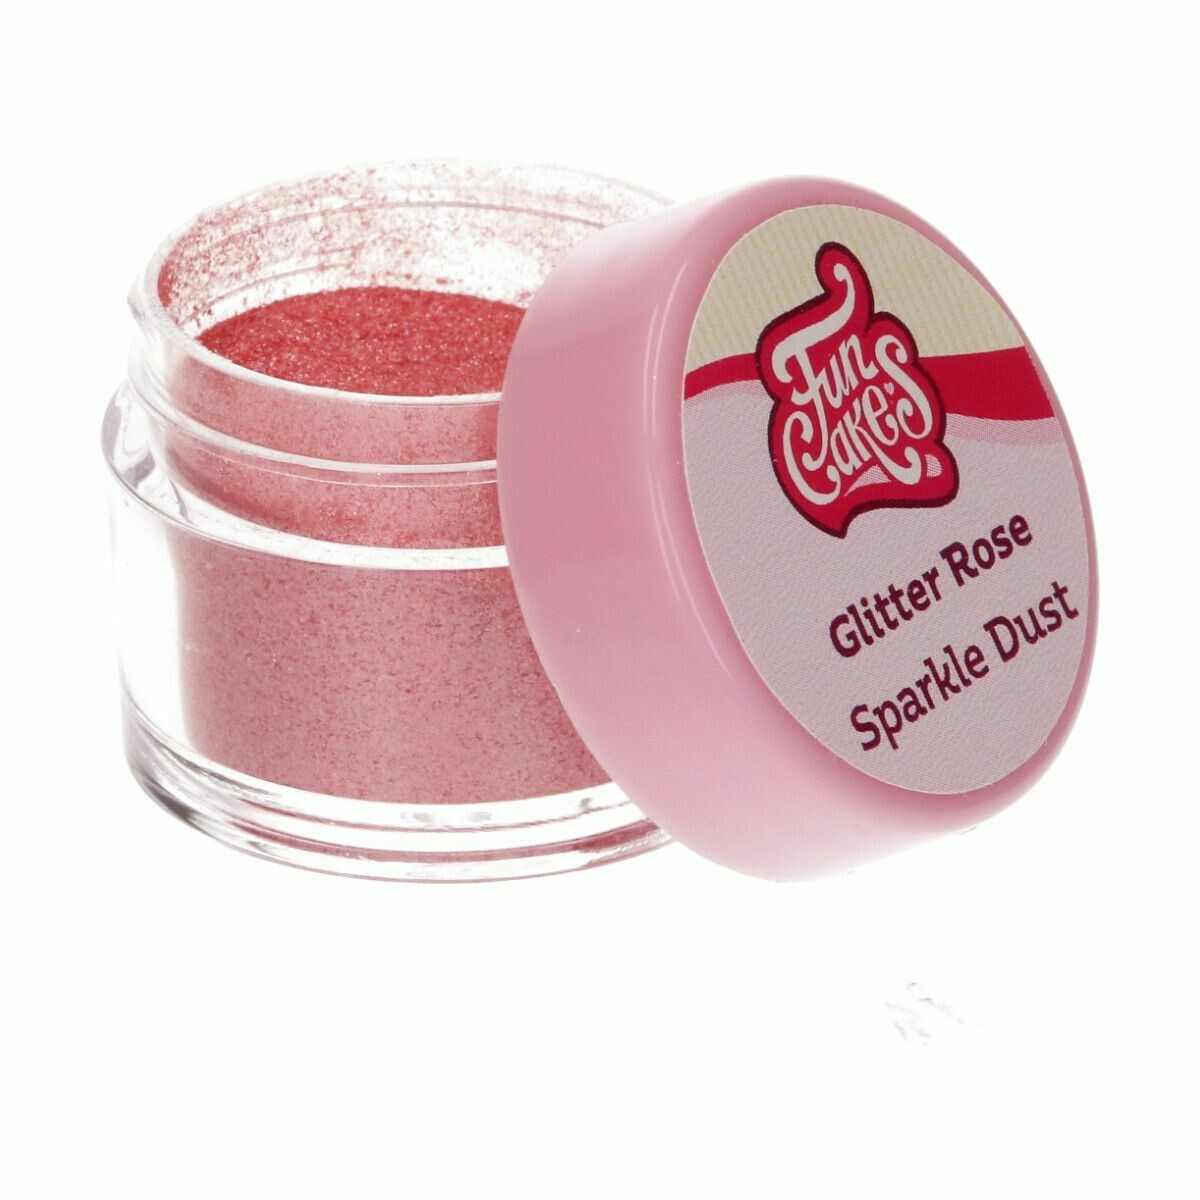 FunCakes Edible Dust -SPARKLE -GLITTER ROSE - Βρώσιμη Σκόνη - Λαμπερό Ροζ με Γκλίτερ